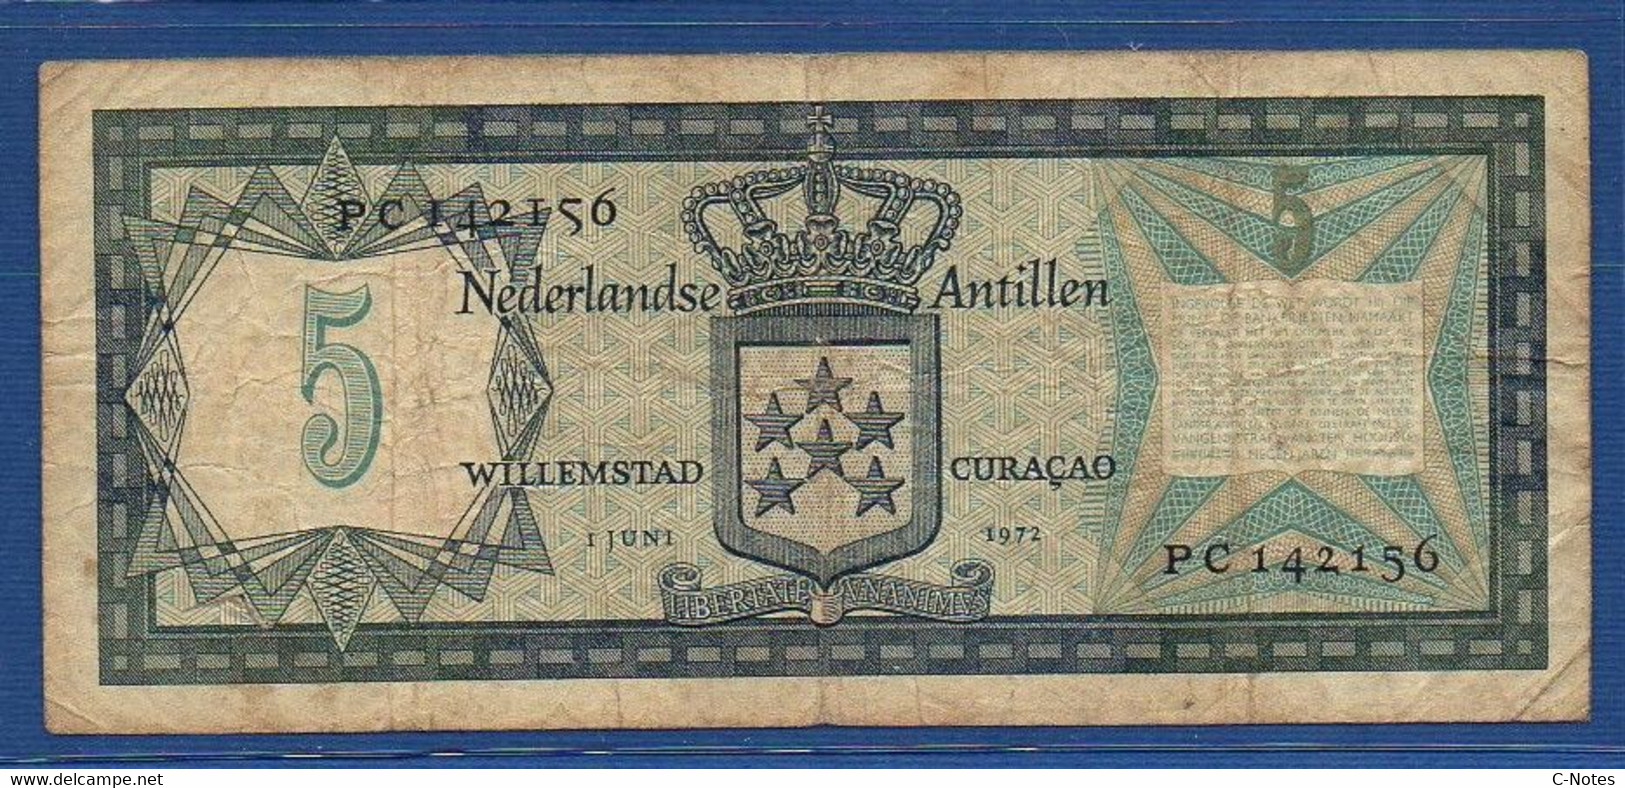 NETHERLANDS ANTILLES - P. 8b – 5 Gulden 1972 F/VF, Serie PC142156 - Netherlands Antilles (...-1986)